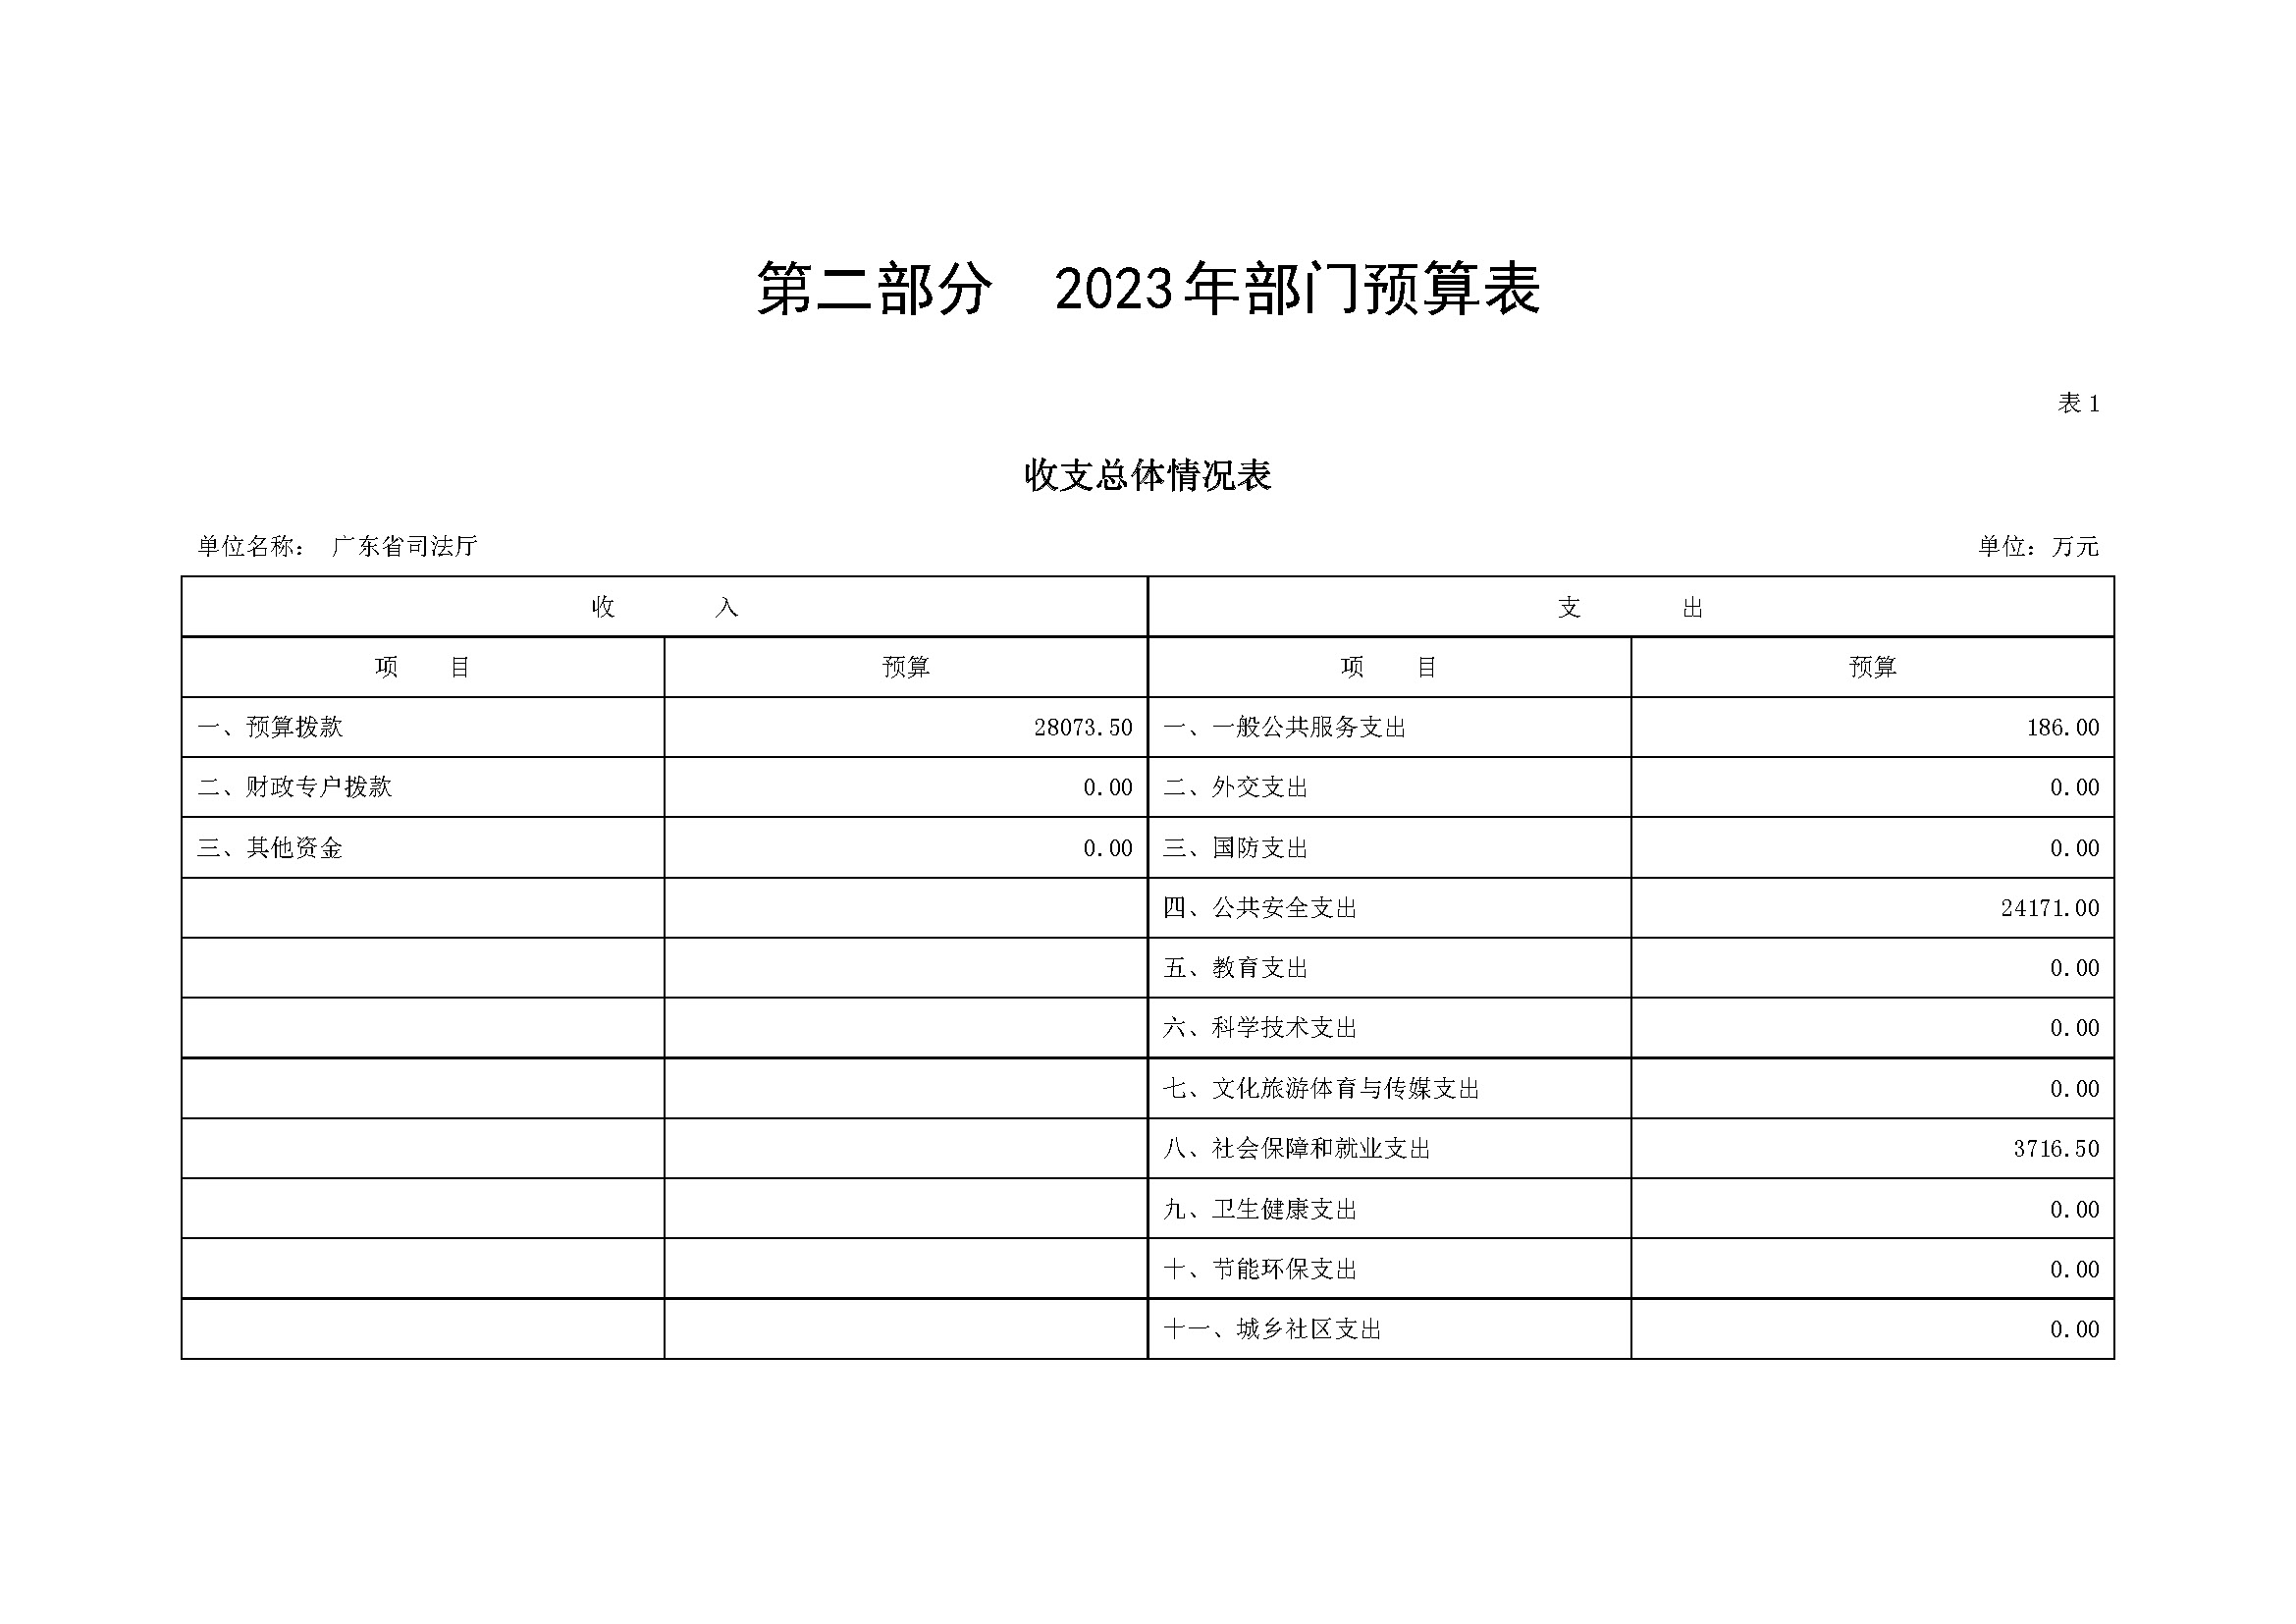 2023年广东省司法厅部门预算_(0213)_页面_05.jpg